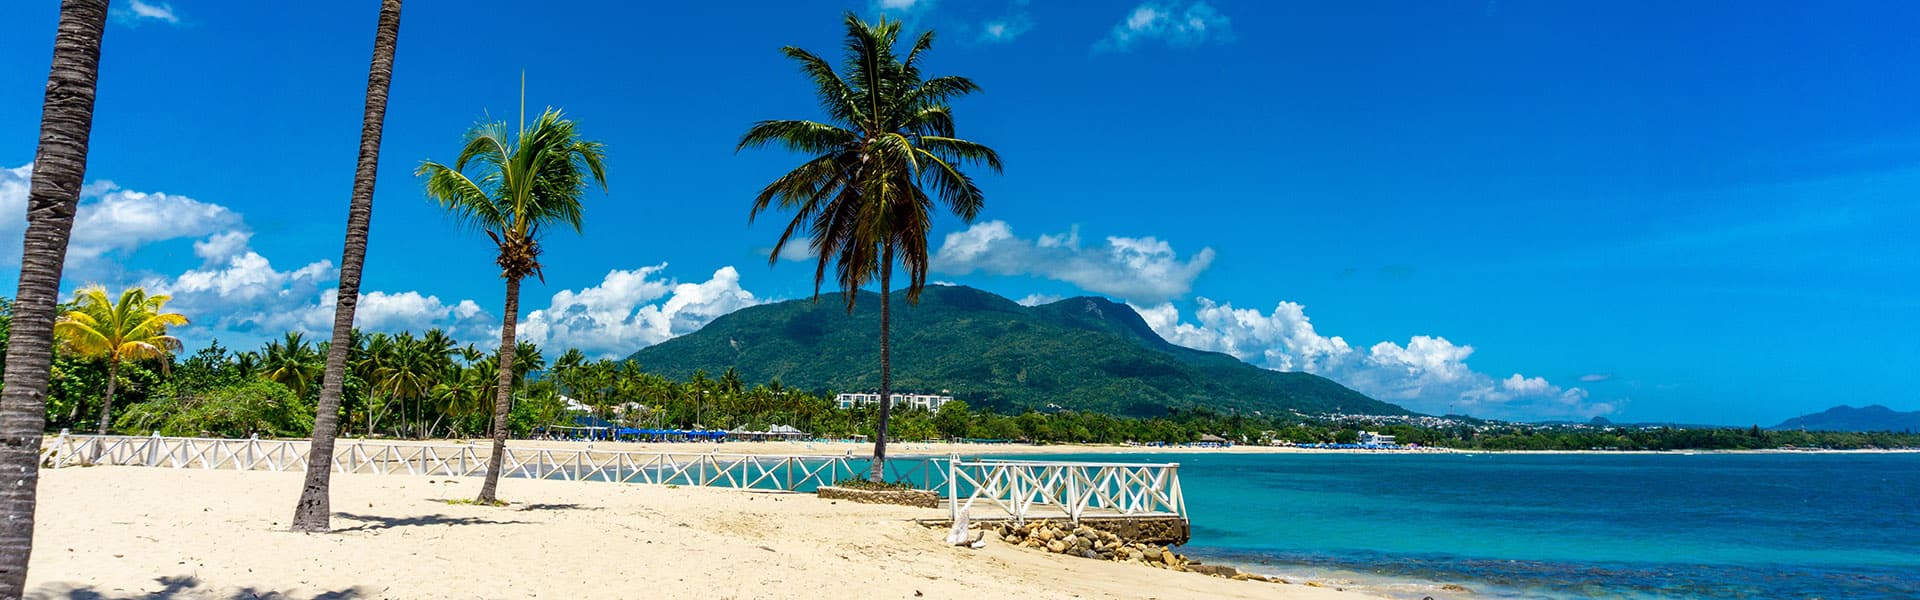 Caraïbes : Great Stirrup Cay et République dominicaine